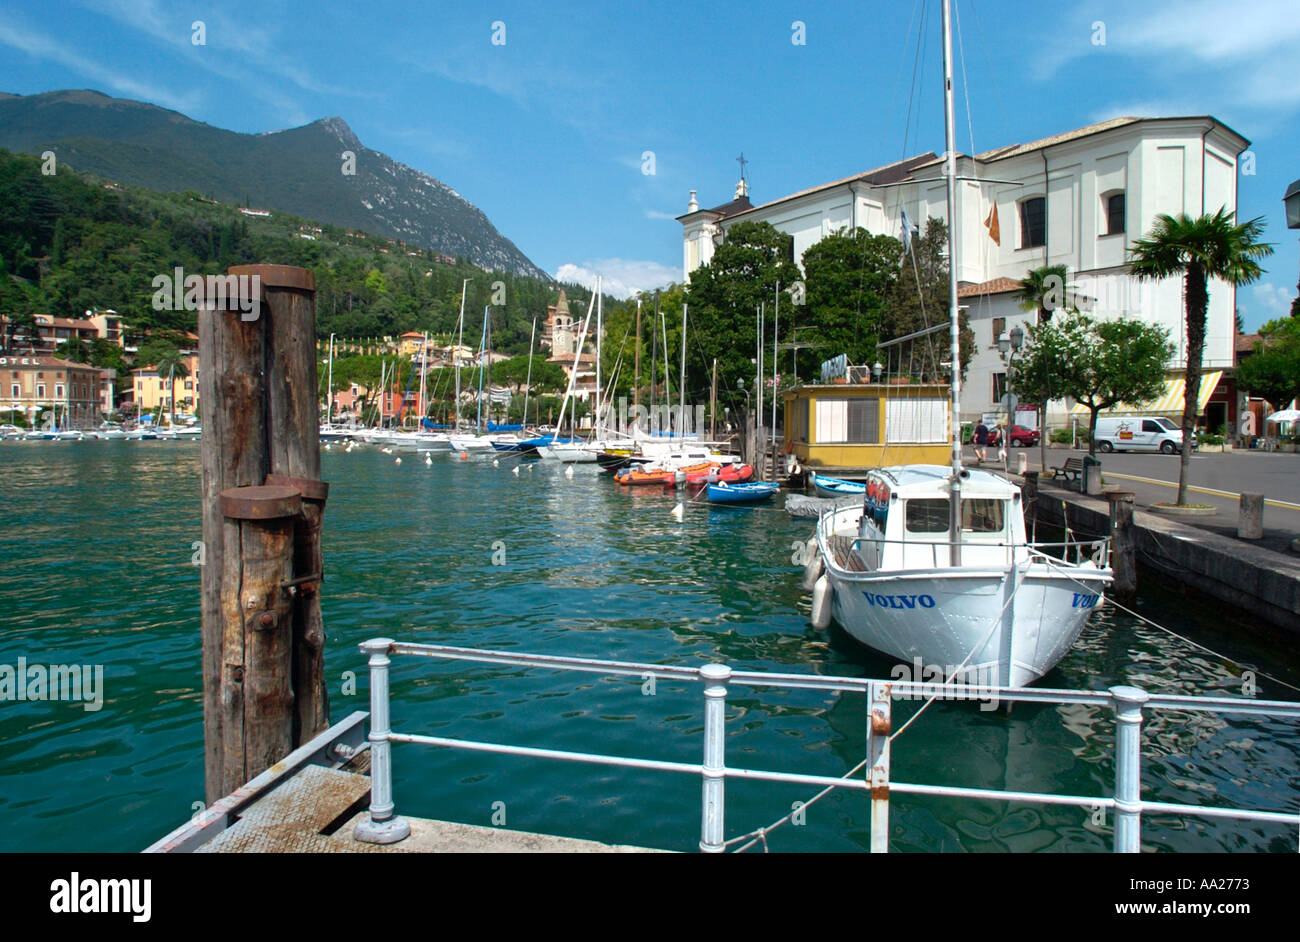 Porto di Maderno, Lago di Garda, Italia Foto Stock